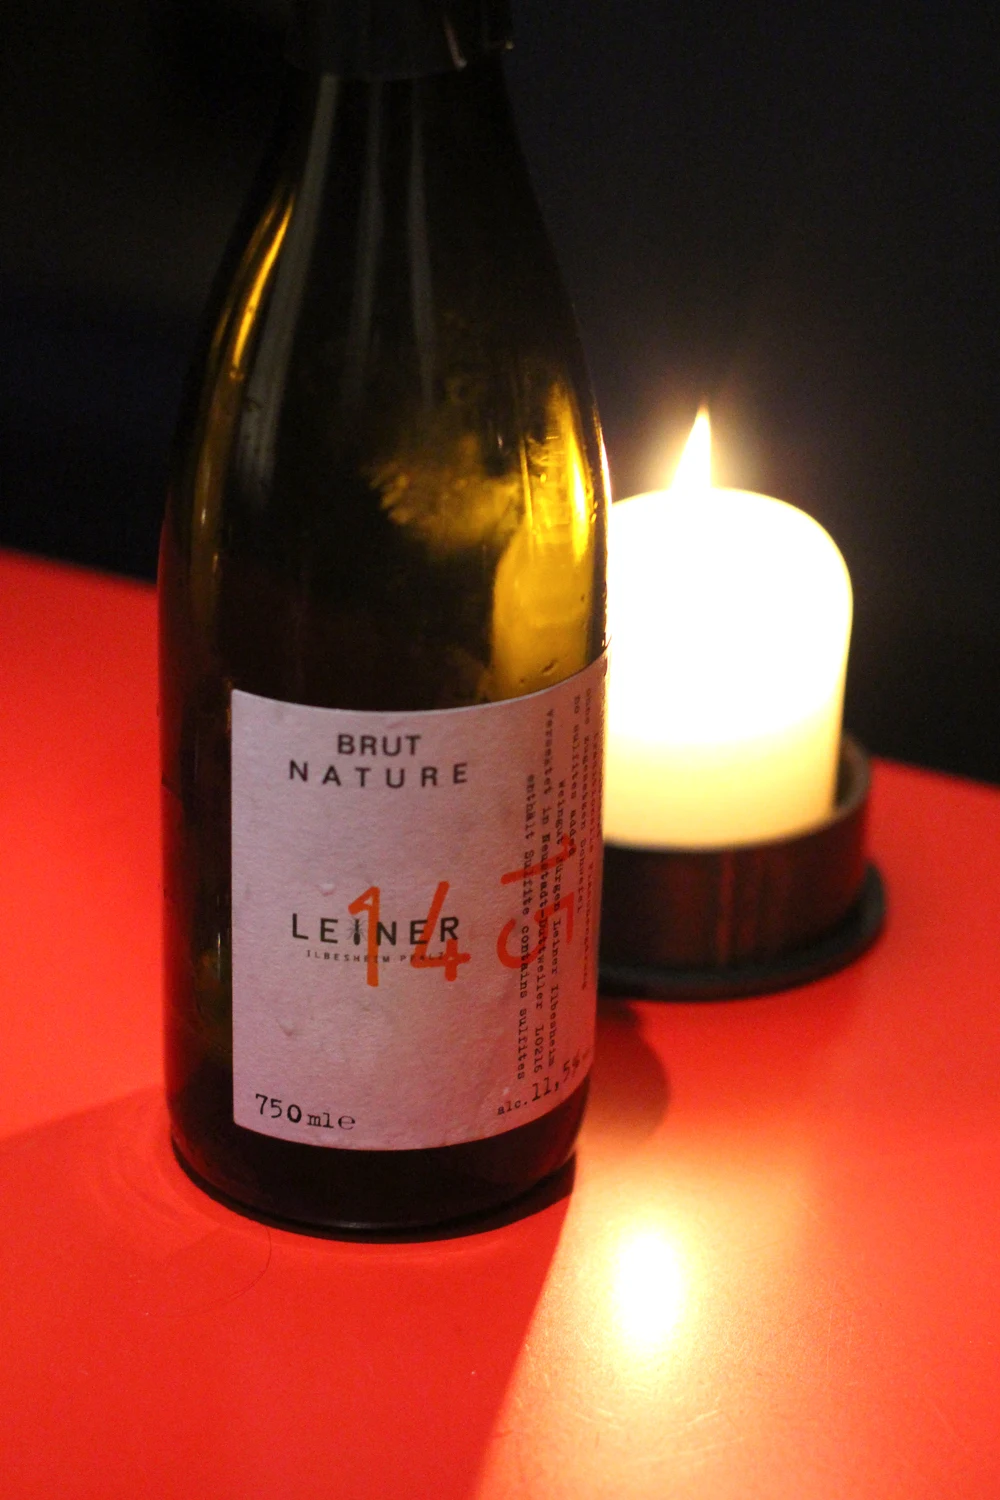 Leiner brut nature sparkling wine at Nobelhart & Schmutzig restaurant in Berlin - luxury travel & foodie blog